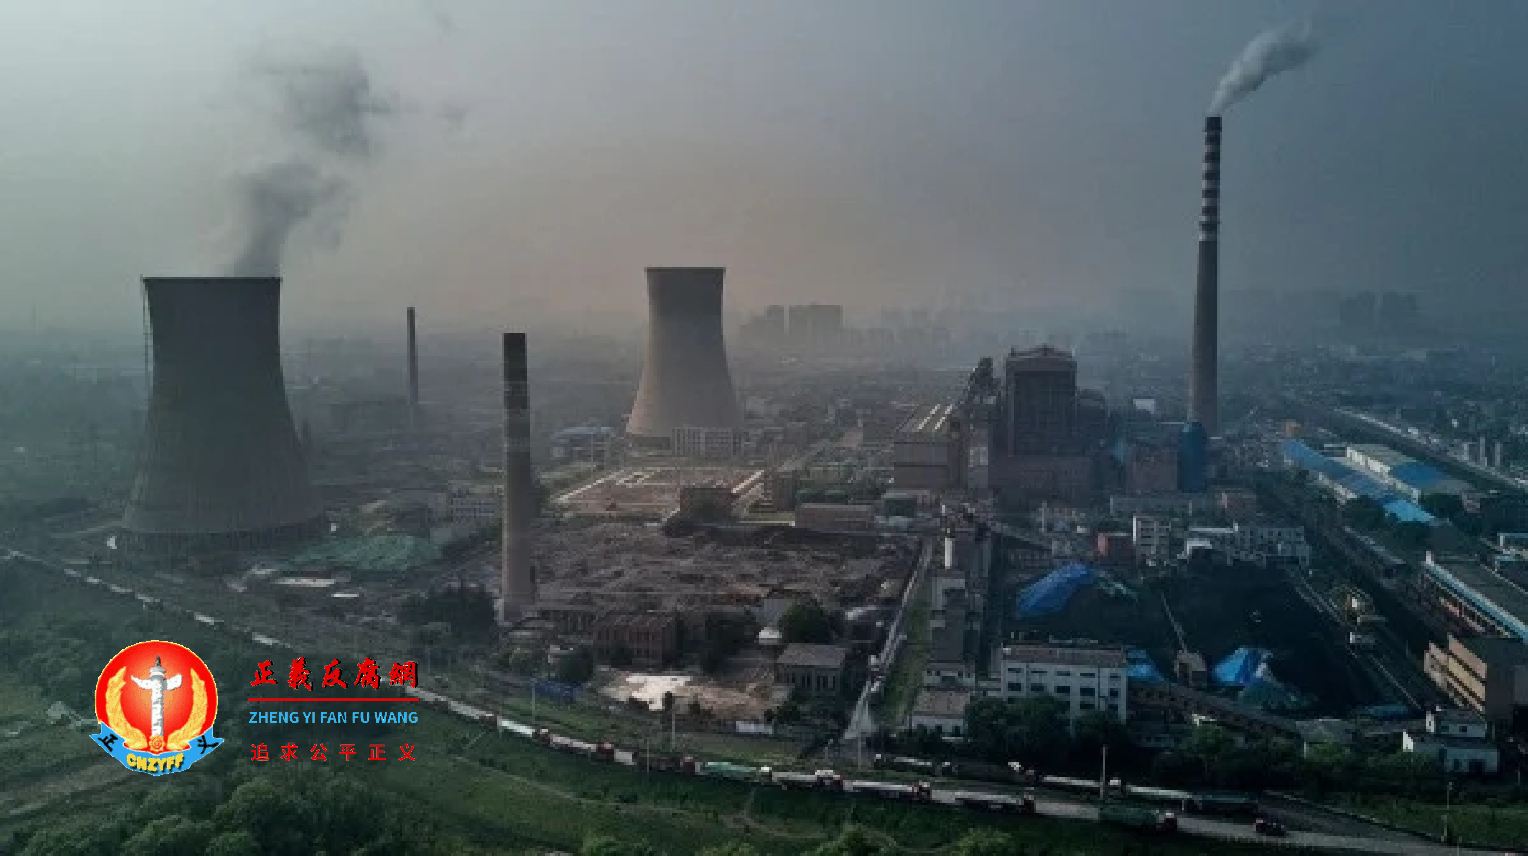 10月4日，浙江省首次向哈萨克采购煤碳，以缓解电煤紧缺情形。.png